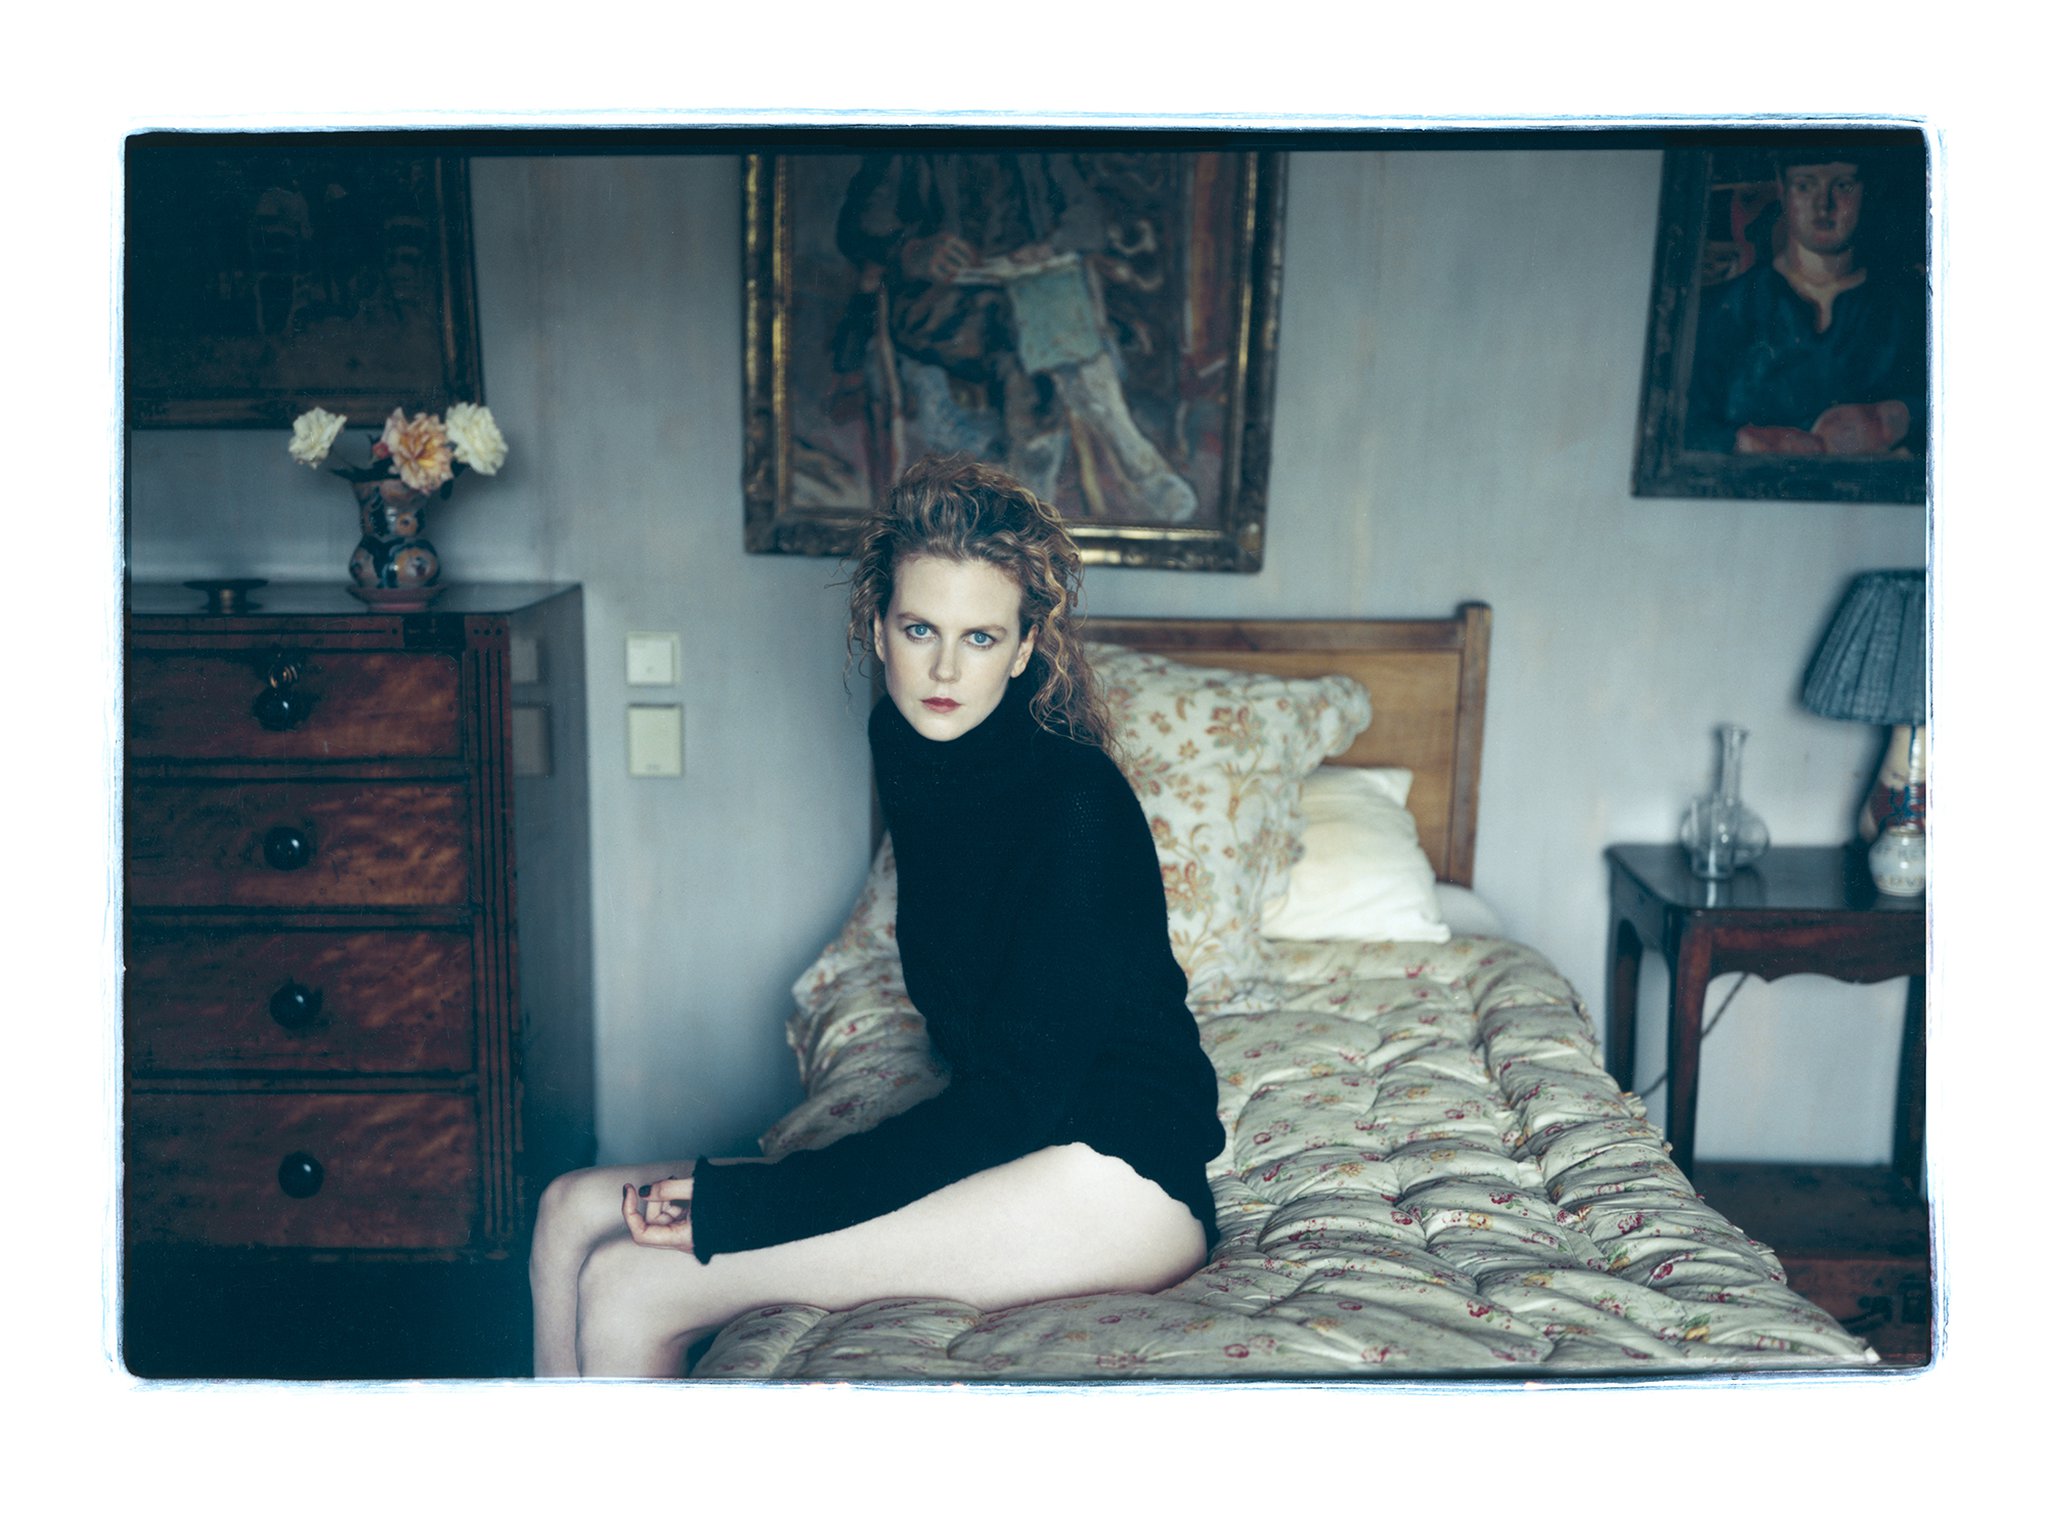 Annie Leibovitz Photographs